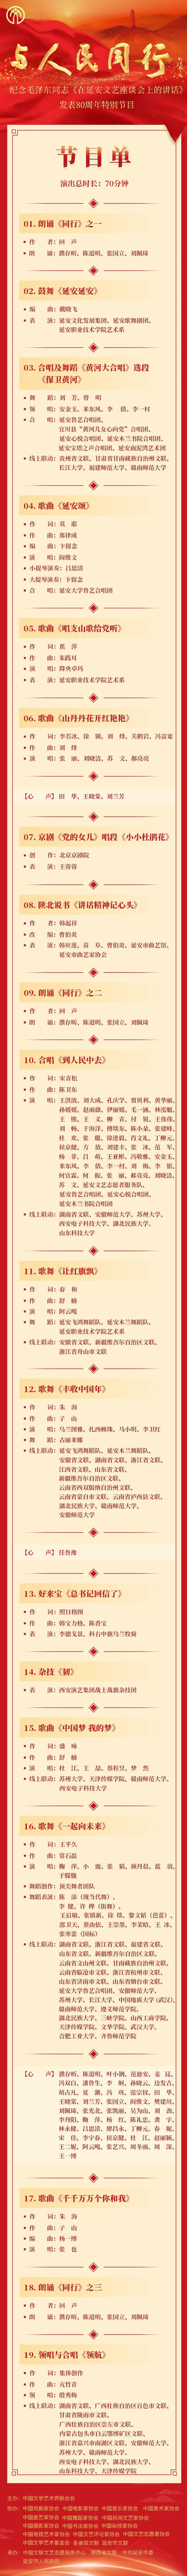 与人民同行——纪念毛泽东同志《在延安文艺座谈会上的讲话》发表80周年特别节目即将播出